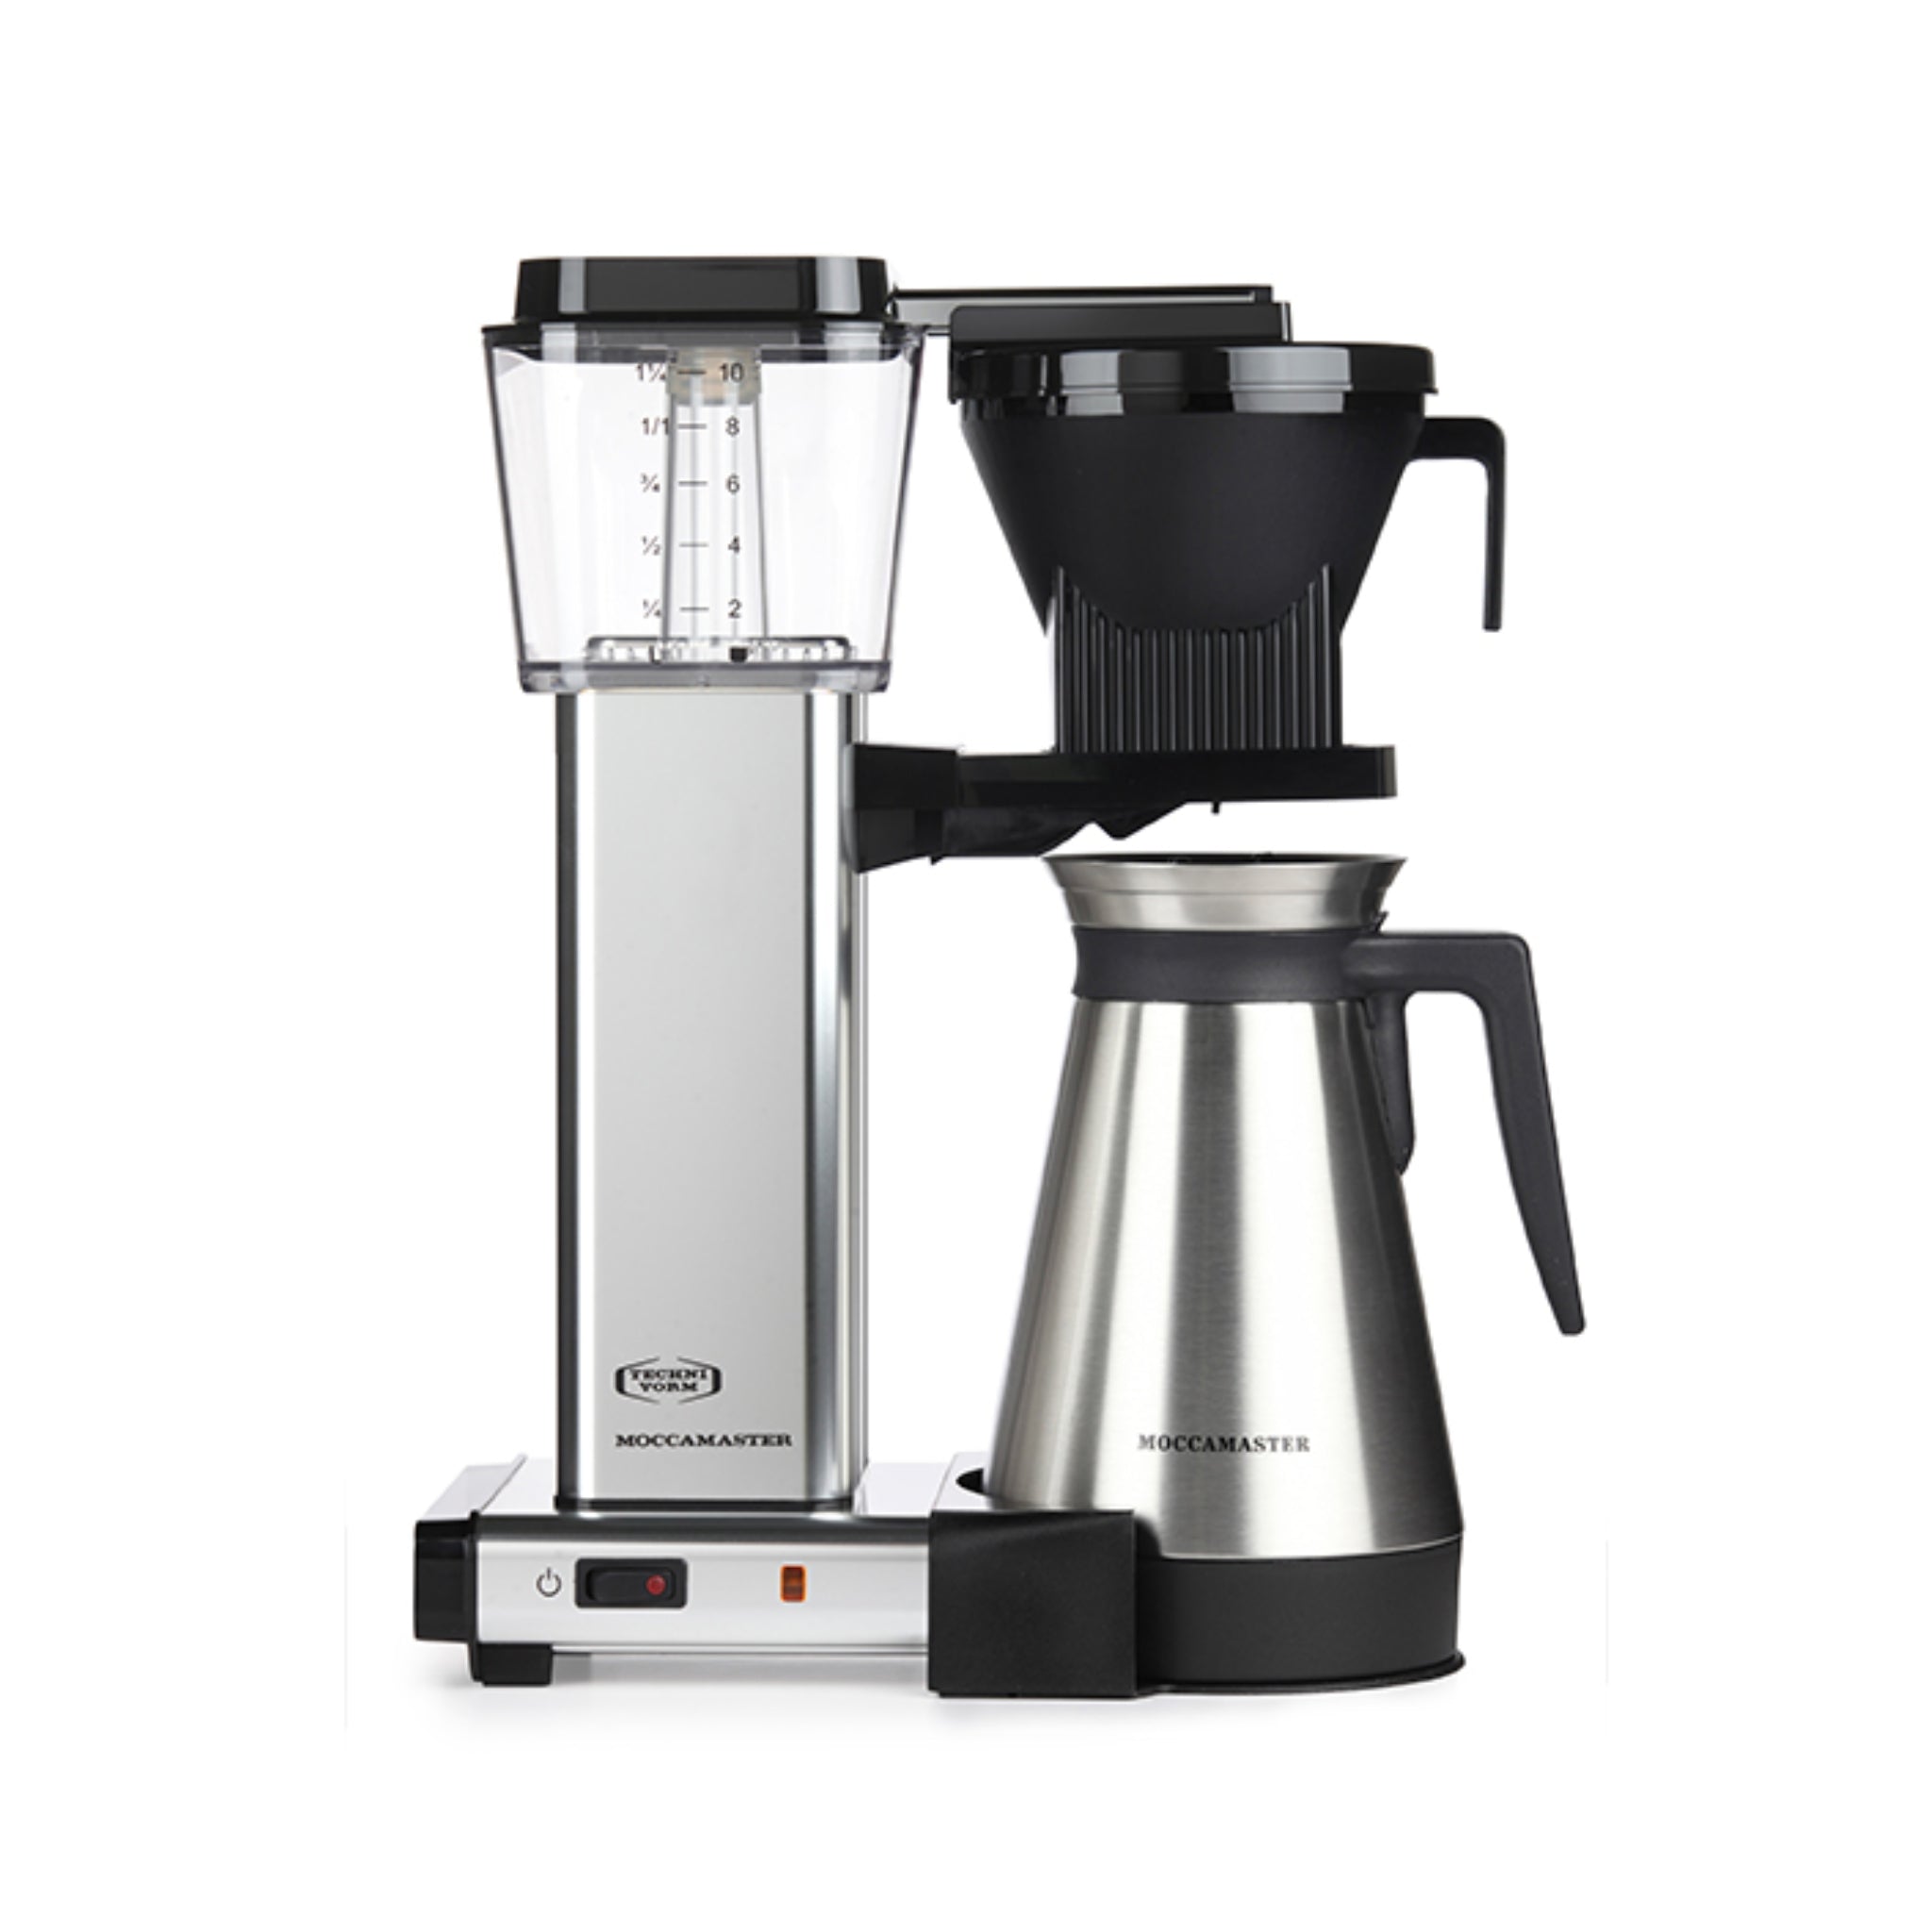 Technivorm Moccamaster KBGT Kaffeemaschine in silber-poliert vor weißem Hintergrund.